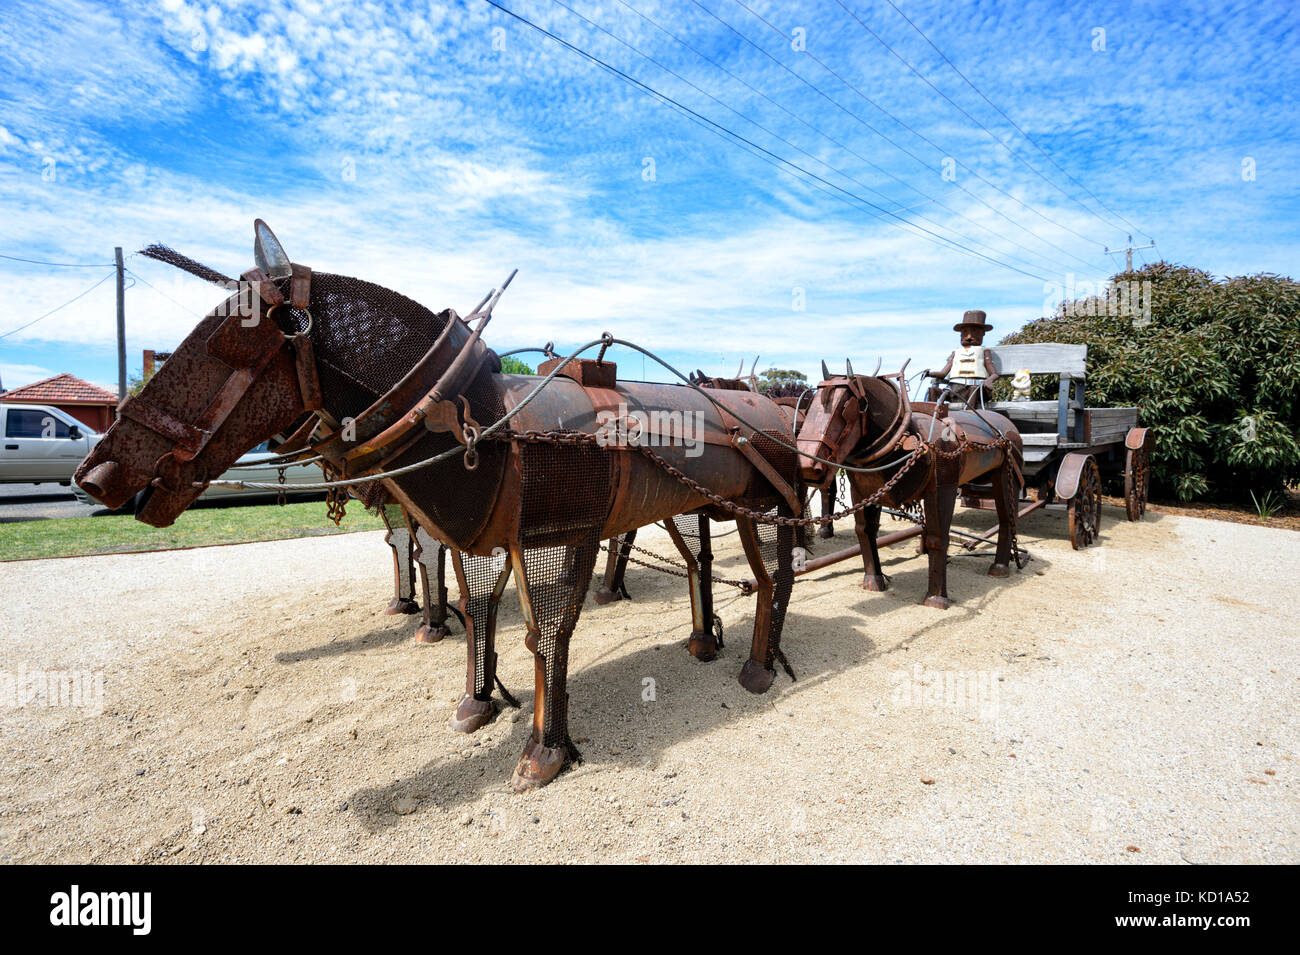 Pferde ziehen einer Warenkorb ist eine Skulptur für den Geist des Landes Festival, Lockhart, New South Wales, NSW, Australien Stockfoto